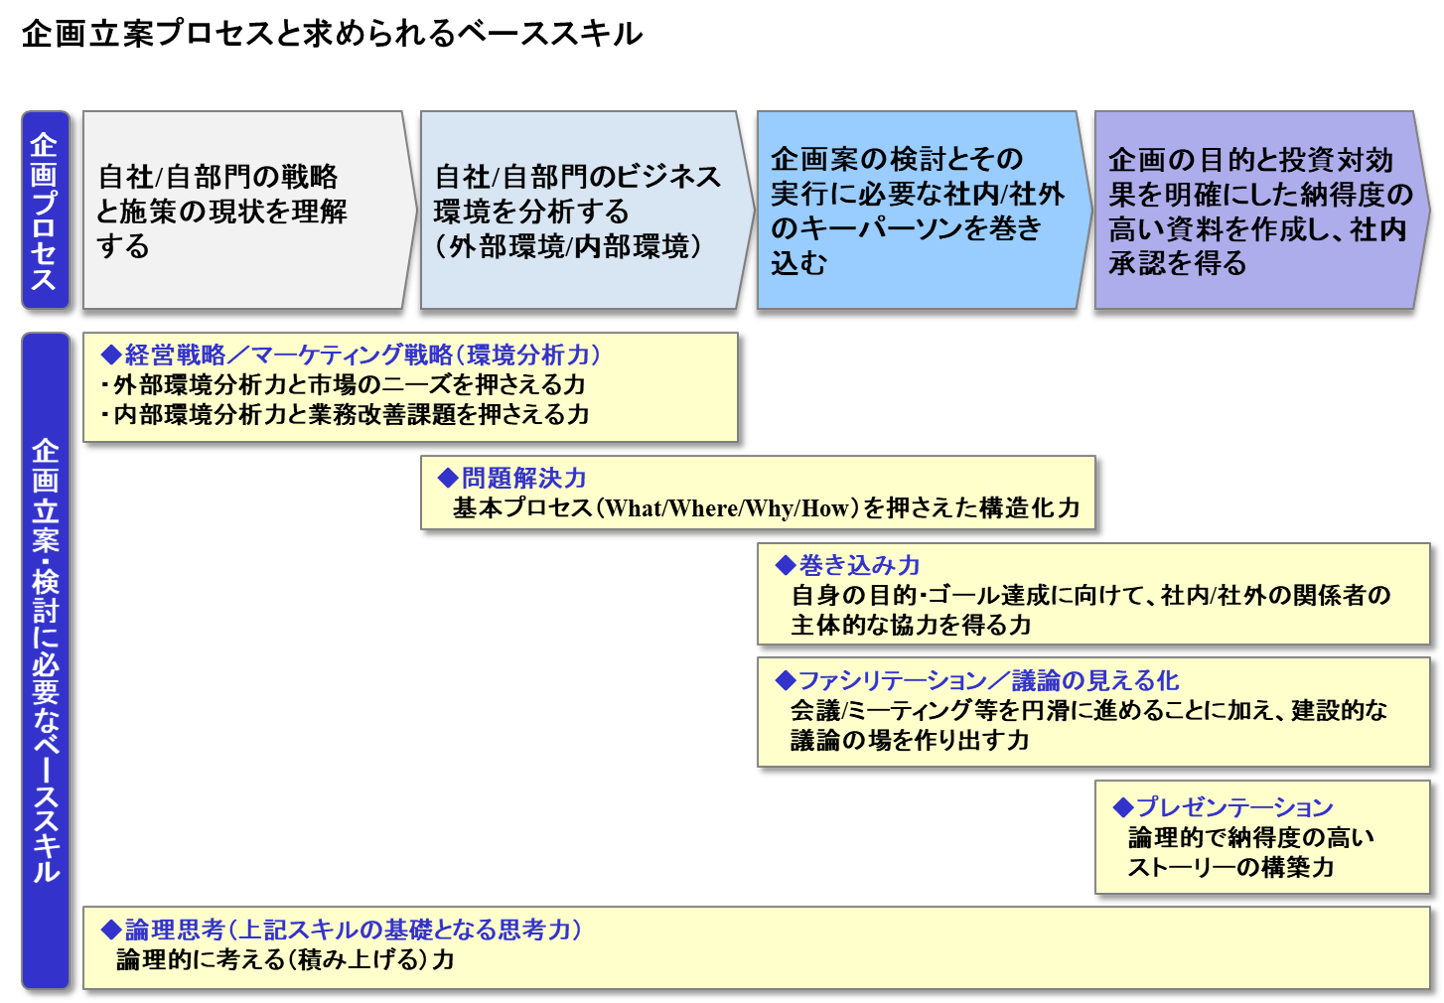 育成 研修のサービス詳細 株式会社シンスター 実務に求められる企画力強化 日本の人事部